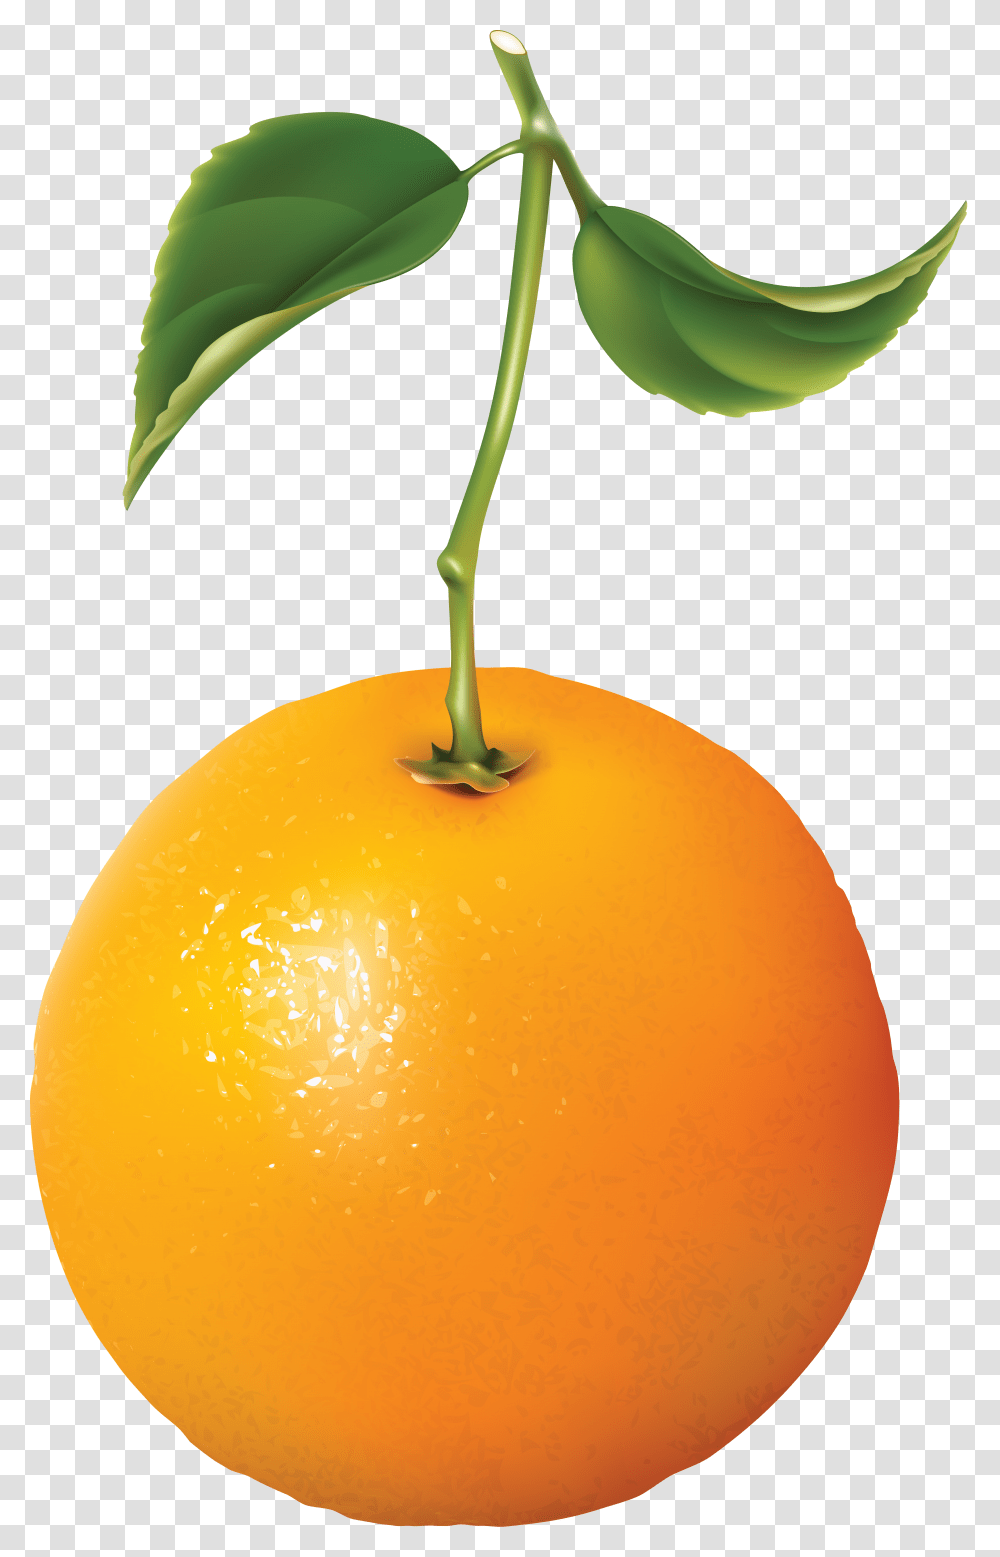 Orange Image For Free Download Free Download Orange, Plant, Citrus Fruit, Food, Grapefruit Transparent Png